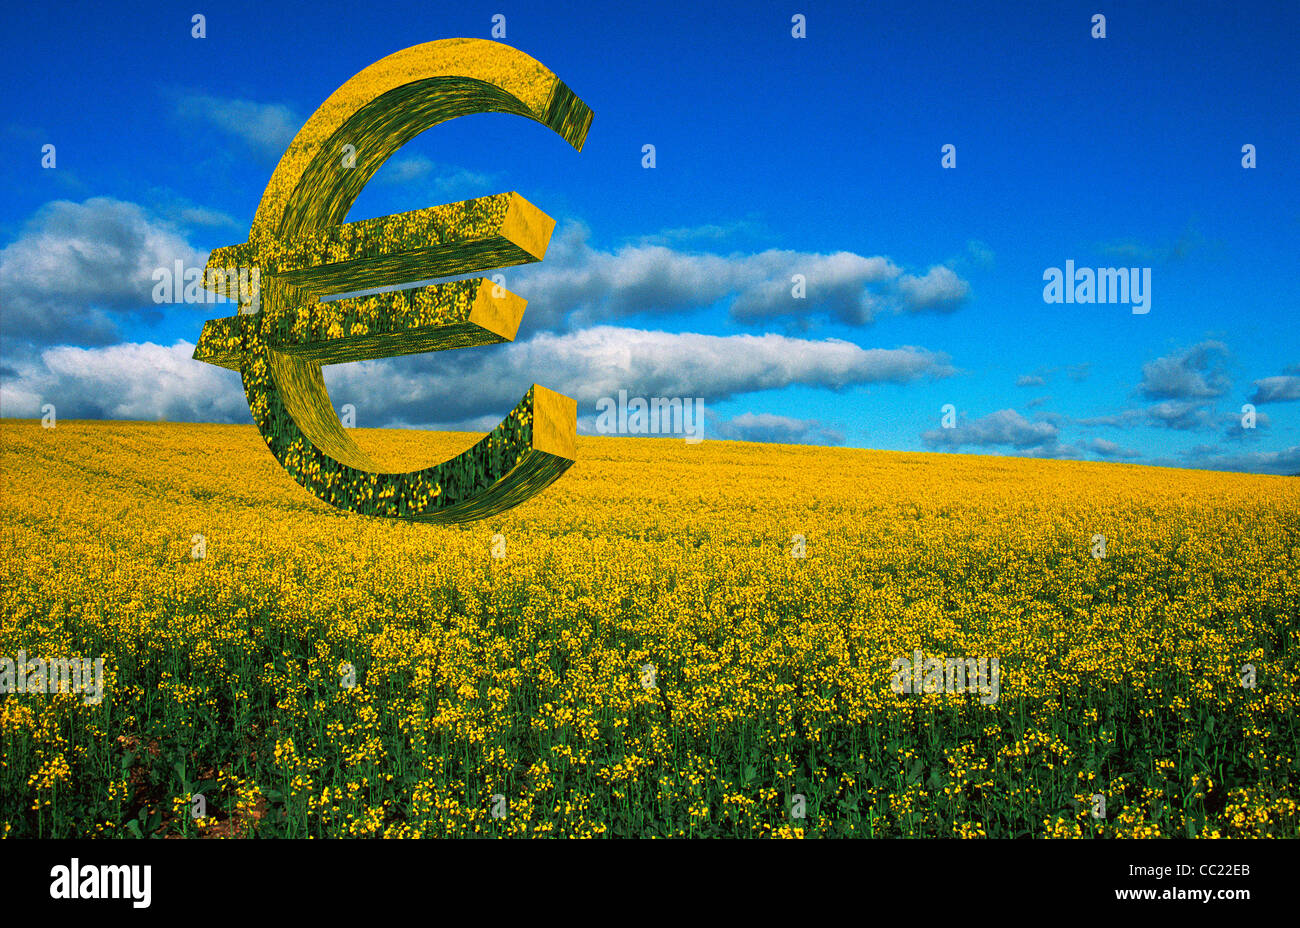 Symbole de l'euro dans un champ de colza colza - agriculture de l'UE / Politique gouvernementale / subventions / business / agriculture concept Banque D'Images